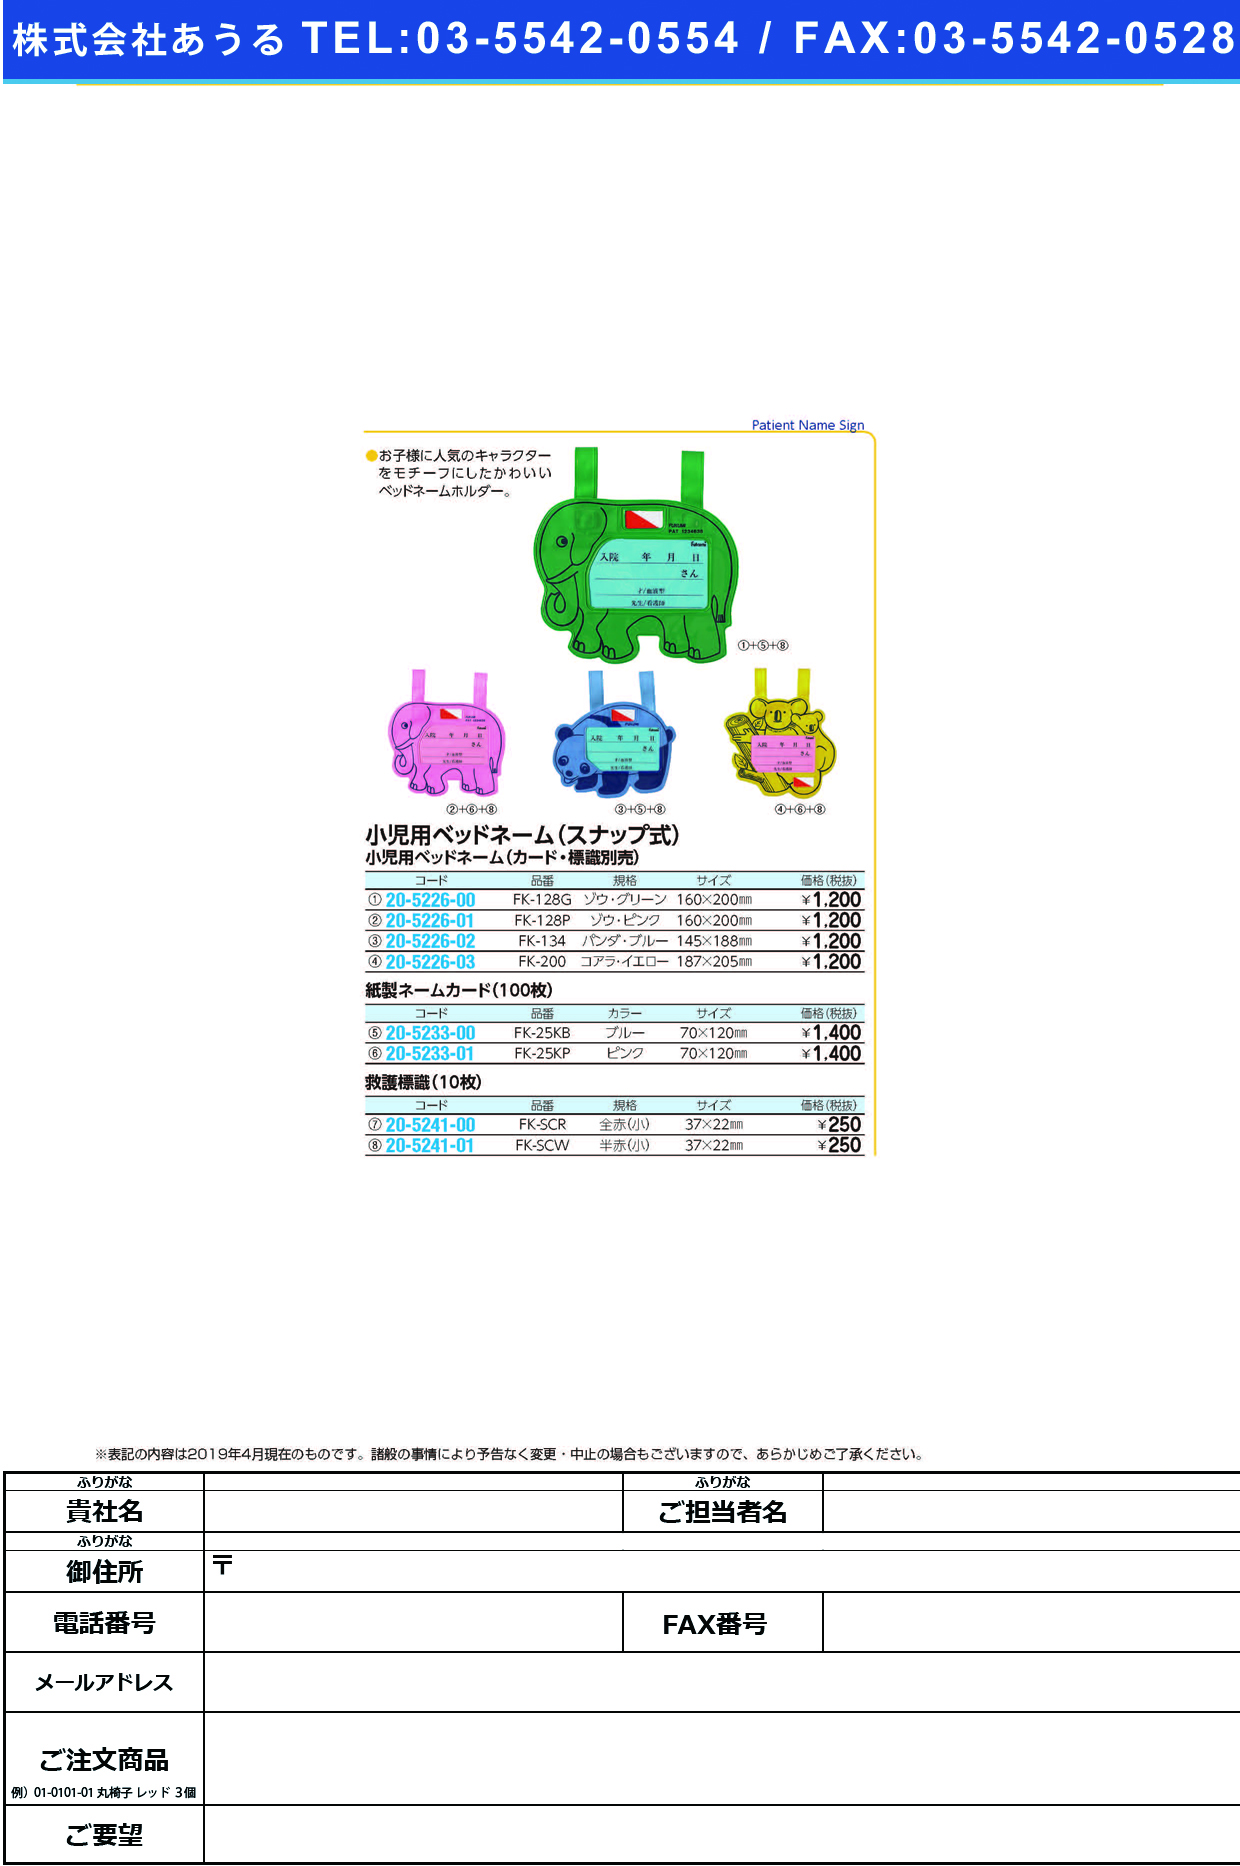 (20-5226-00)ベッドネームホルダー（小児用） FK-128G(ｽﾅｯﾌﾟｼｷ) ﾍﾞｯﾄﾞﾈｰﾑﾎﾙﾀﾞｰ【1枚単位】【2019年カタログ商品】